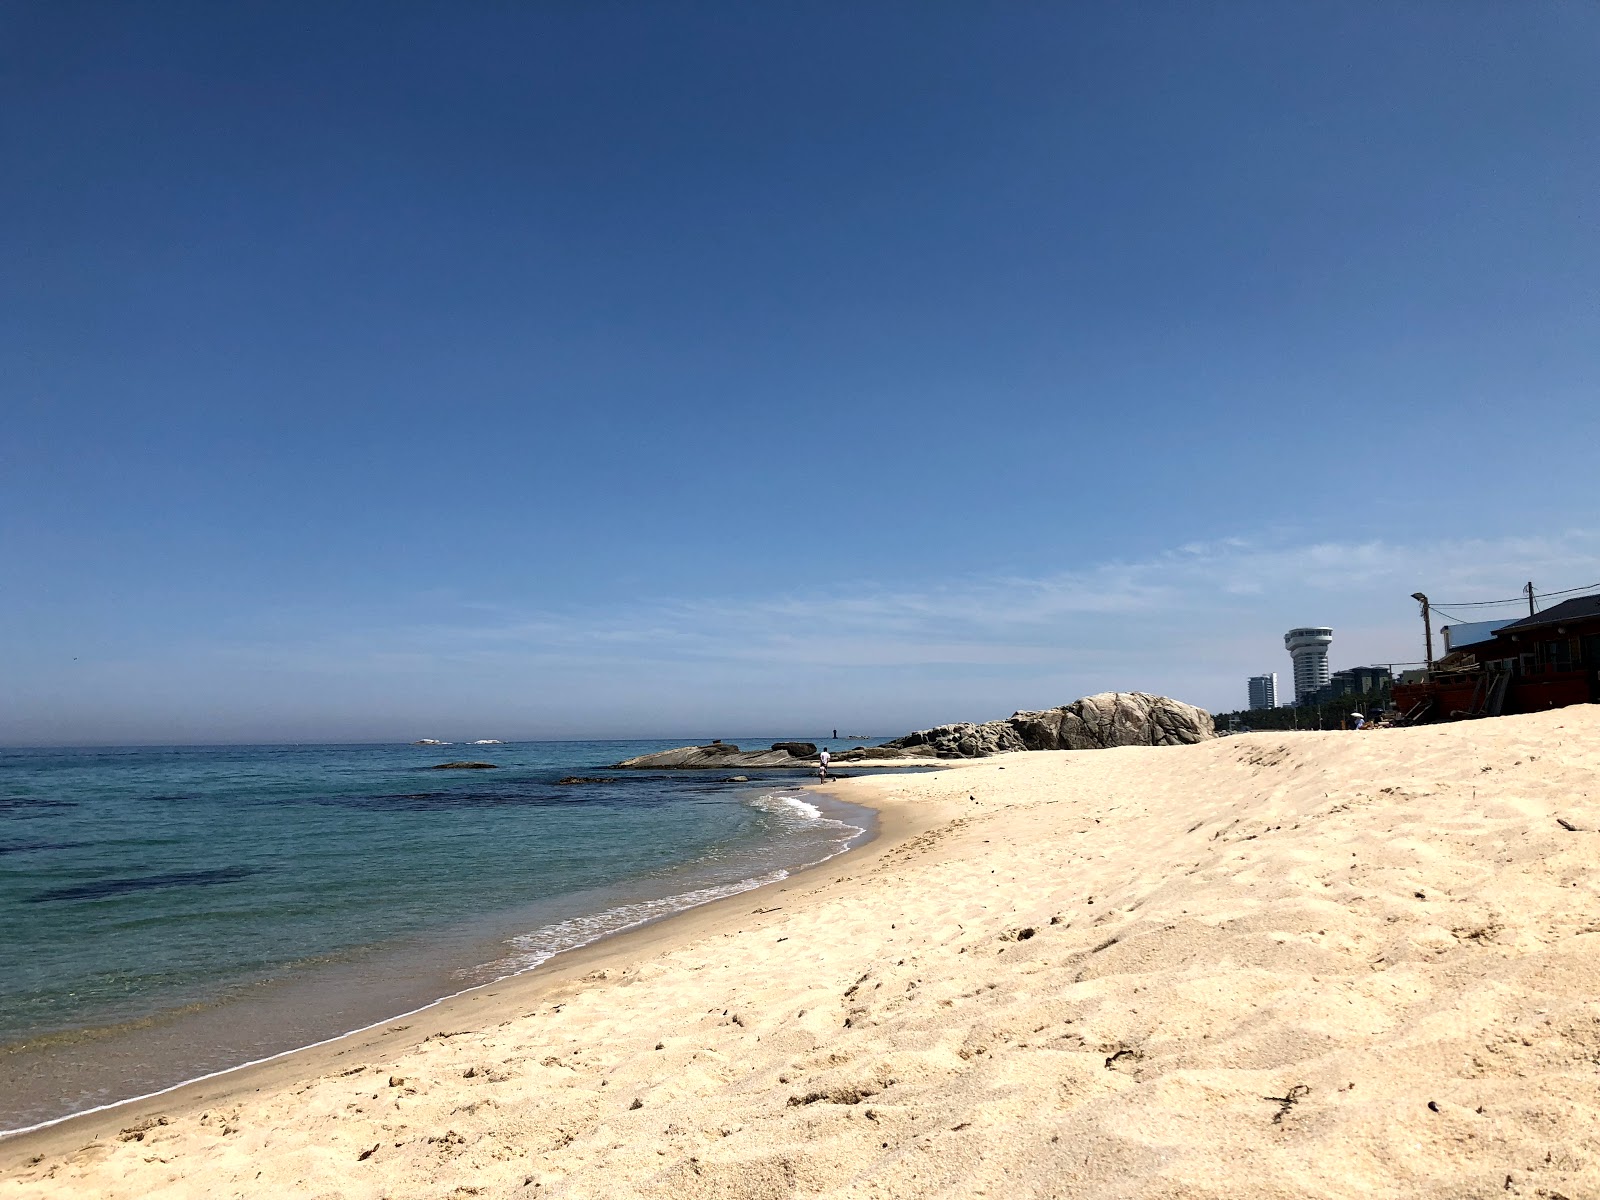 Fotografie cu Gyeongpo Beach - locul popular printre cunoscătorii de relaxare